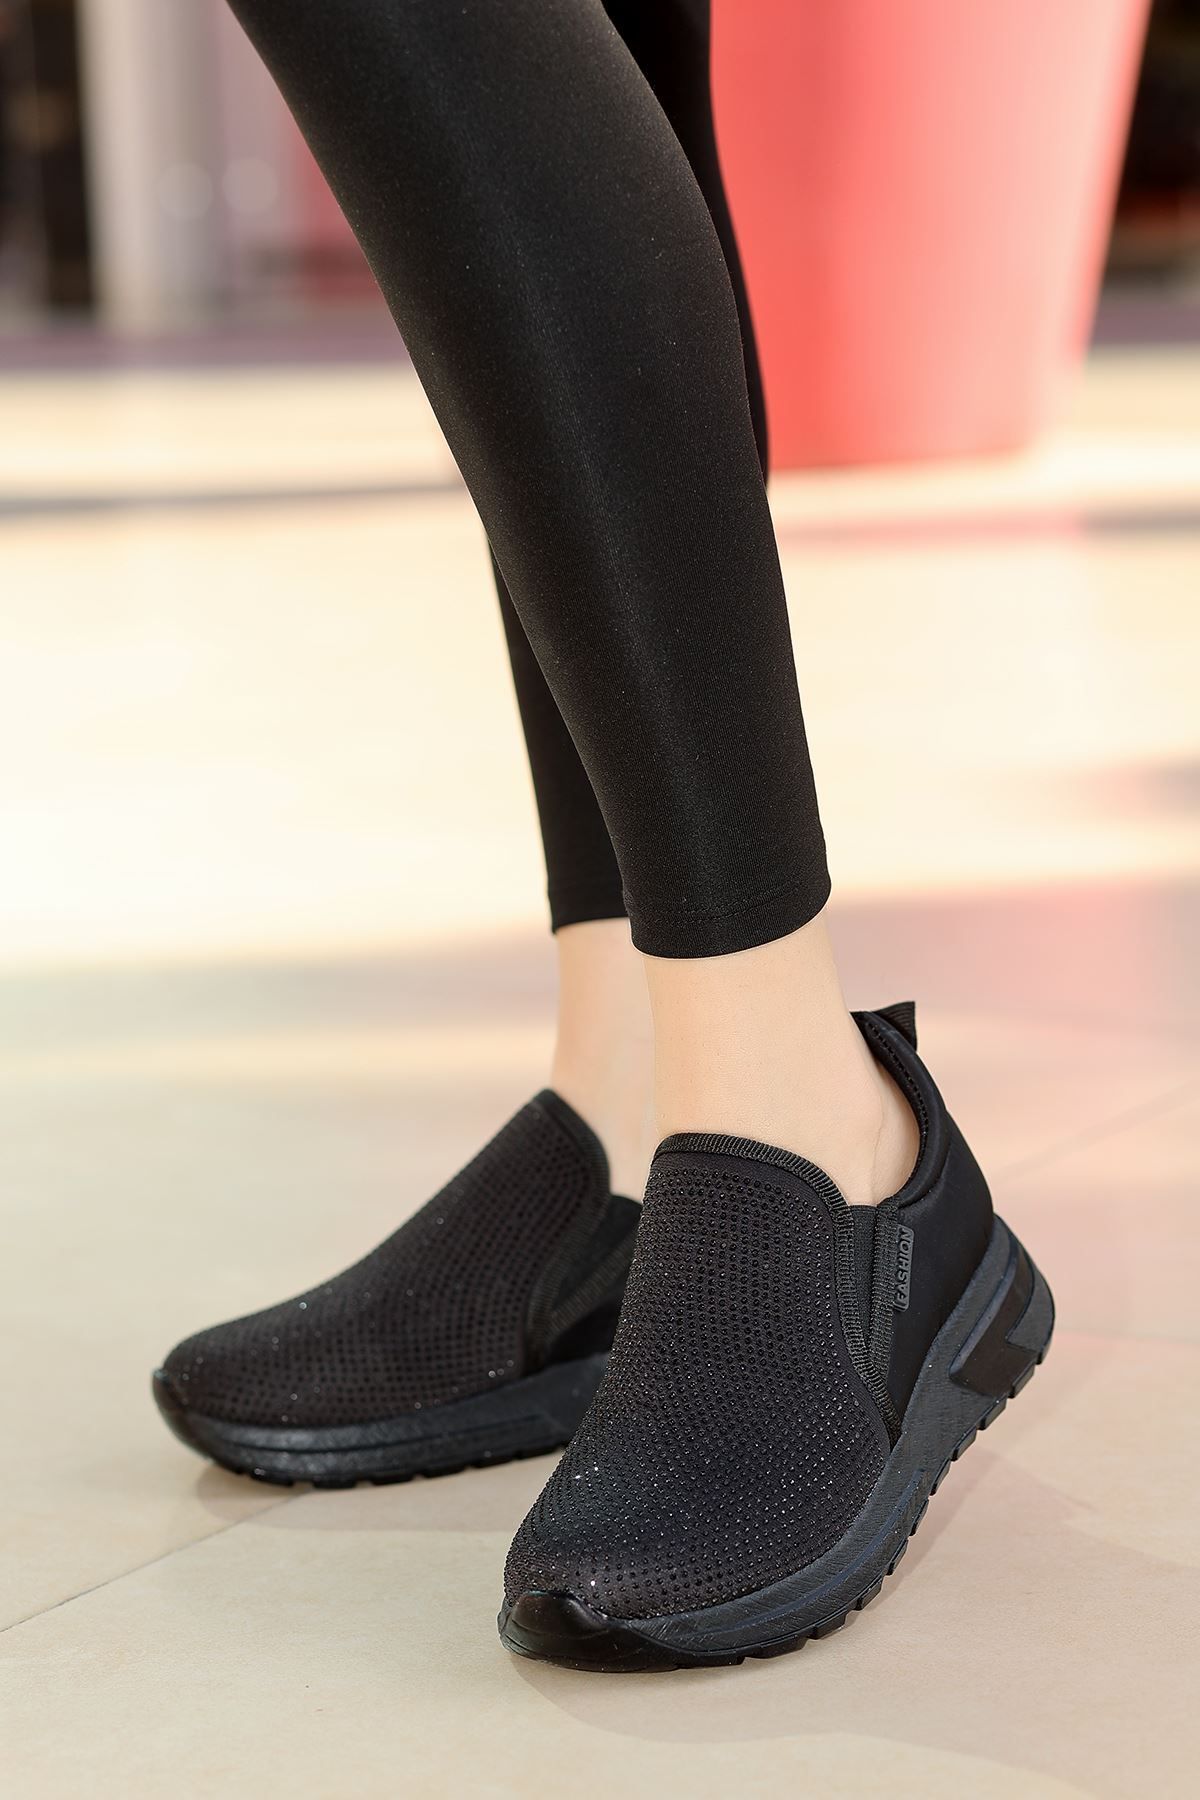 otuzbesshoes Lare Taş Detaylı Kadın Spor Ayakkabı Siyah